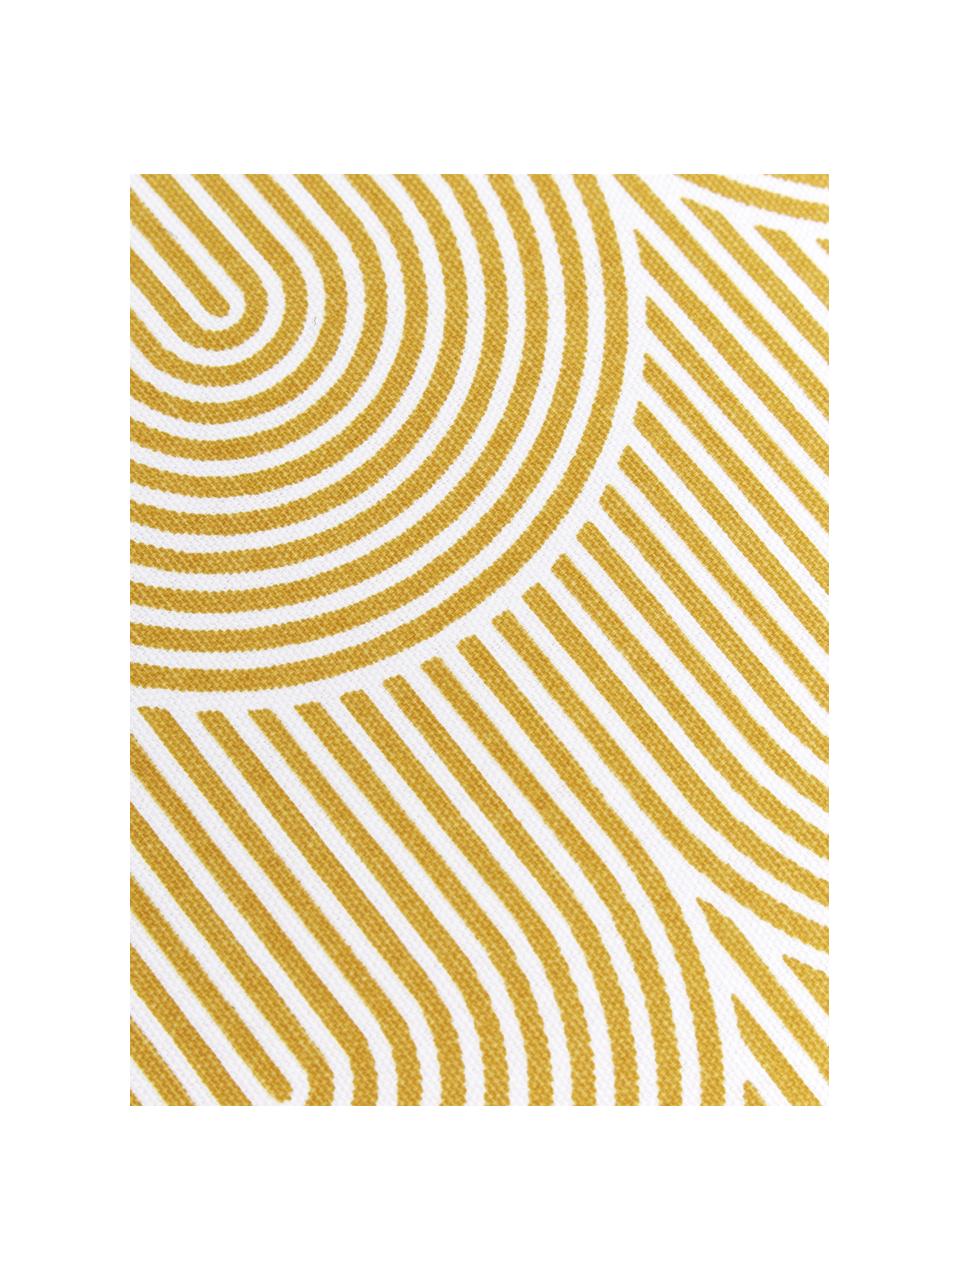 Hohes Sitzkissen Arc in Gelb/Weiss, Bezug: 100% Baumwolle, Gelb, 40 x 40 cm